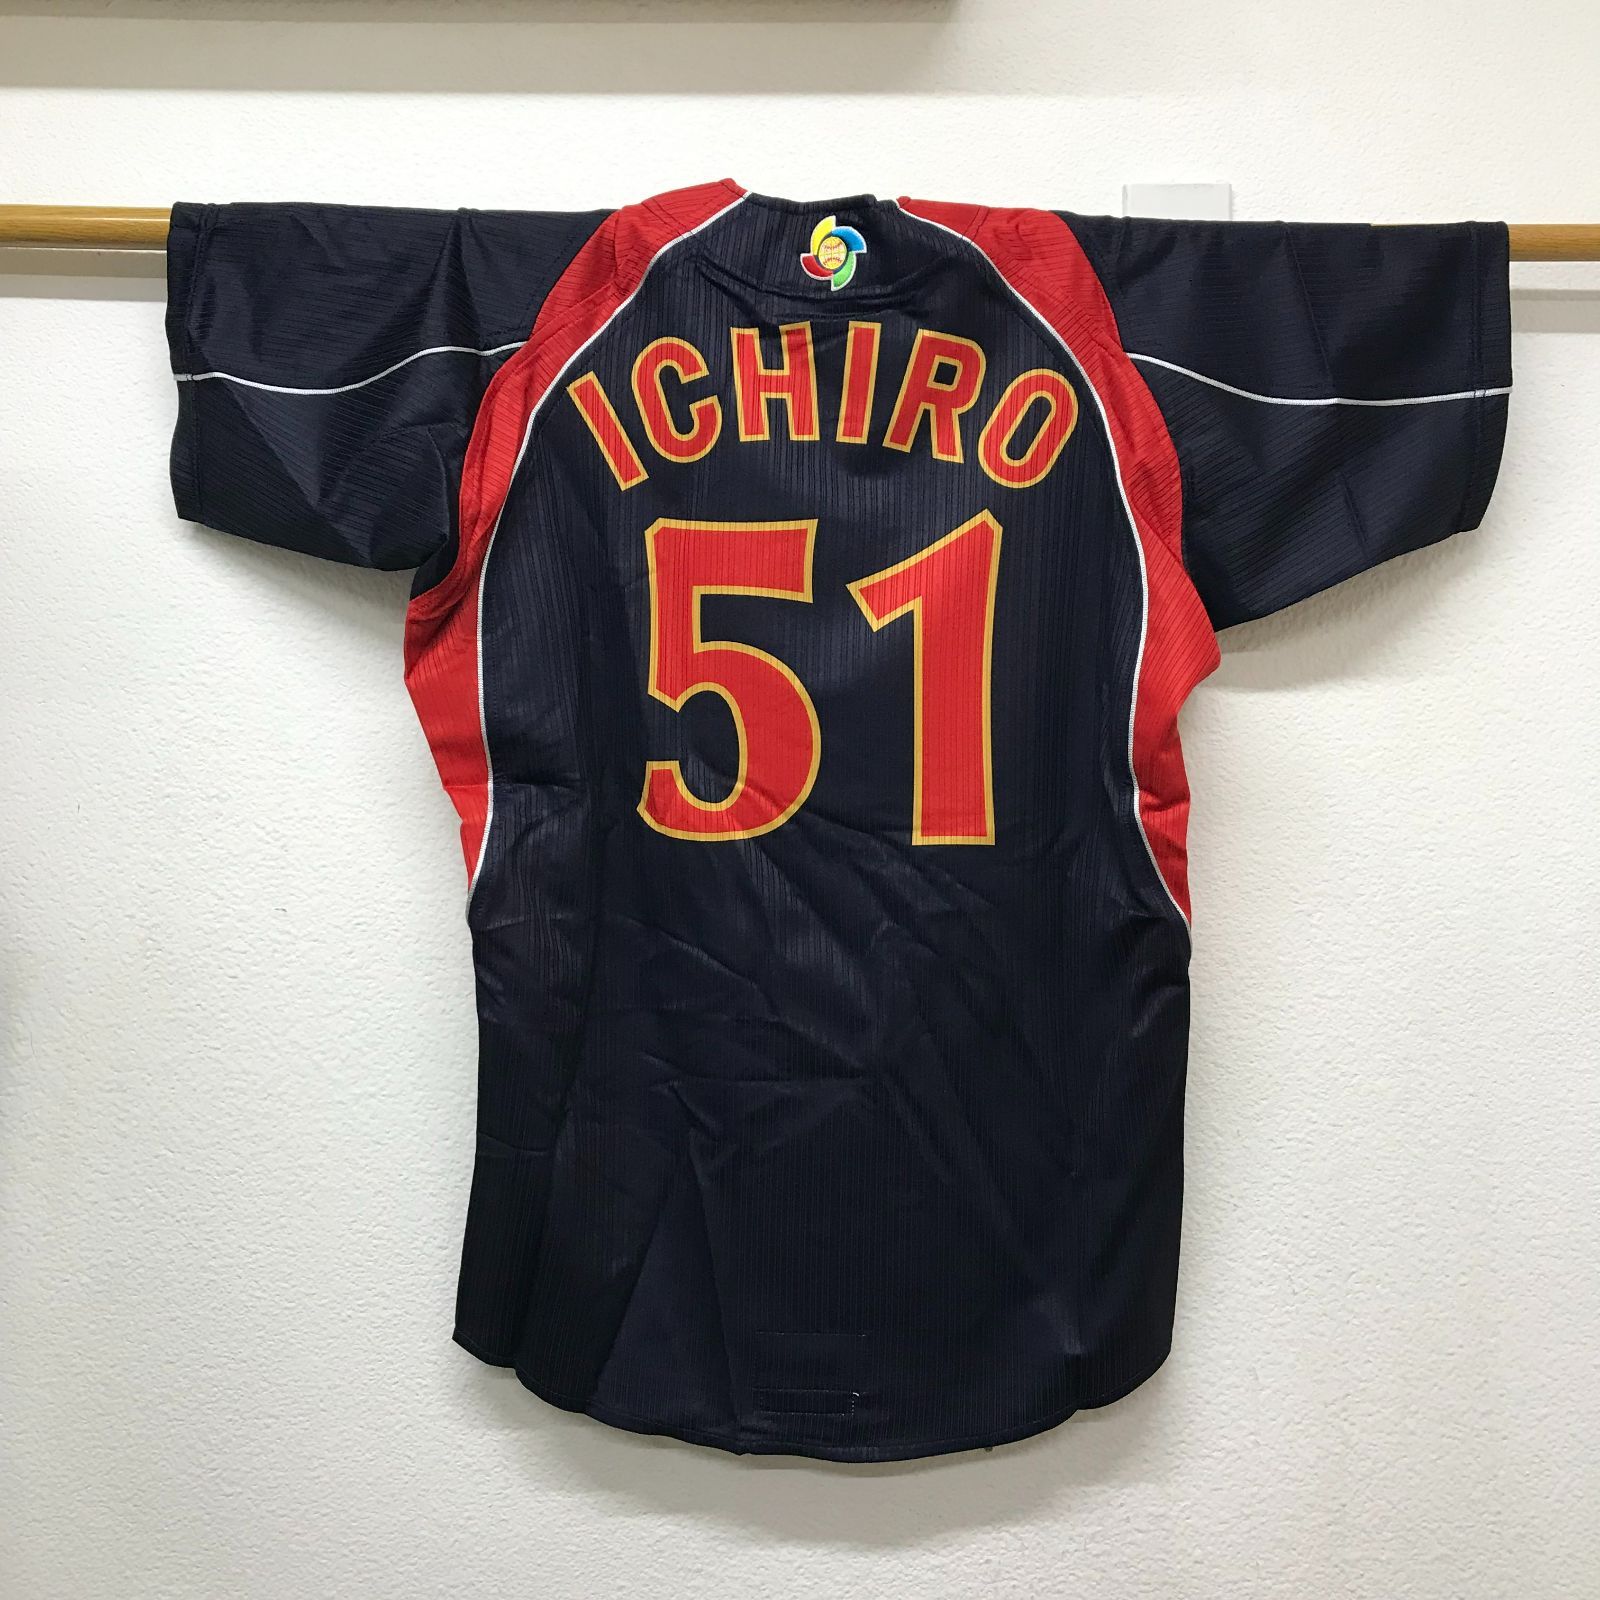 野球日本代表2009WBC イチロー『ICHIRO 51 』ユニフォーム M~L-